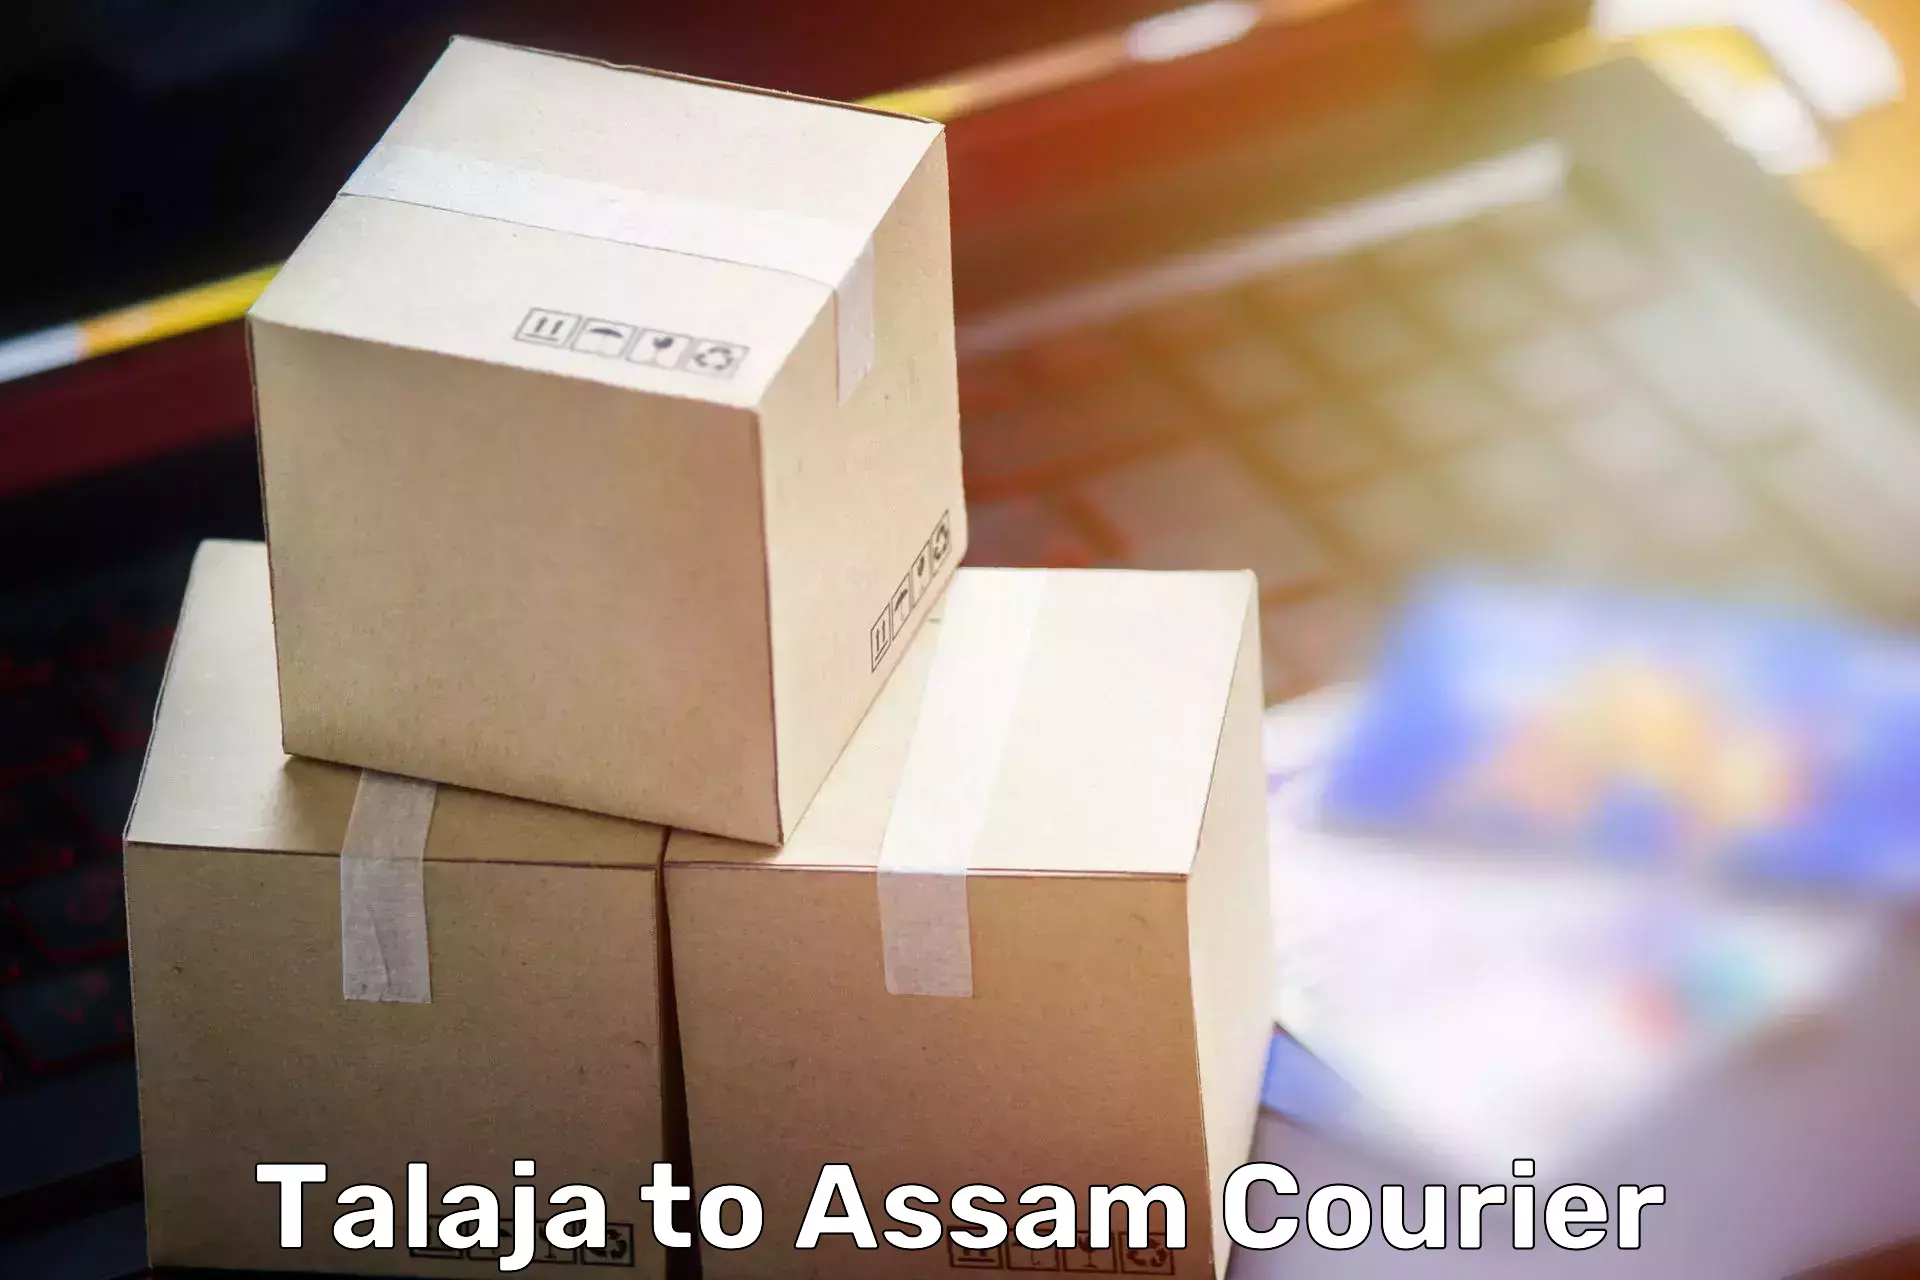 Furniture transport company Talaja to Lala Assam